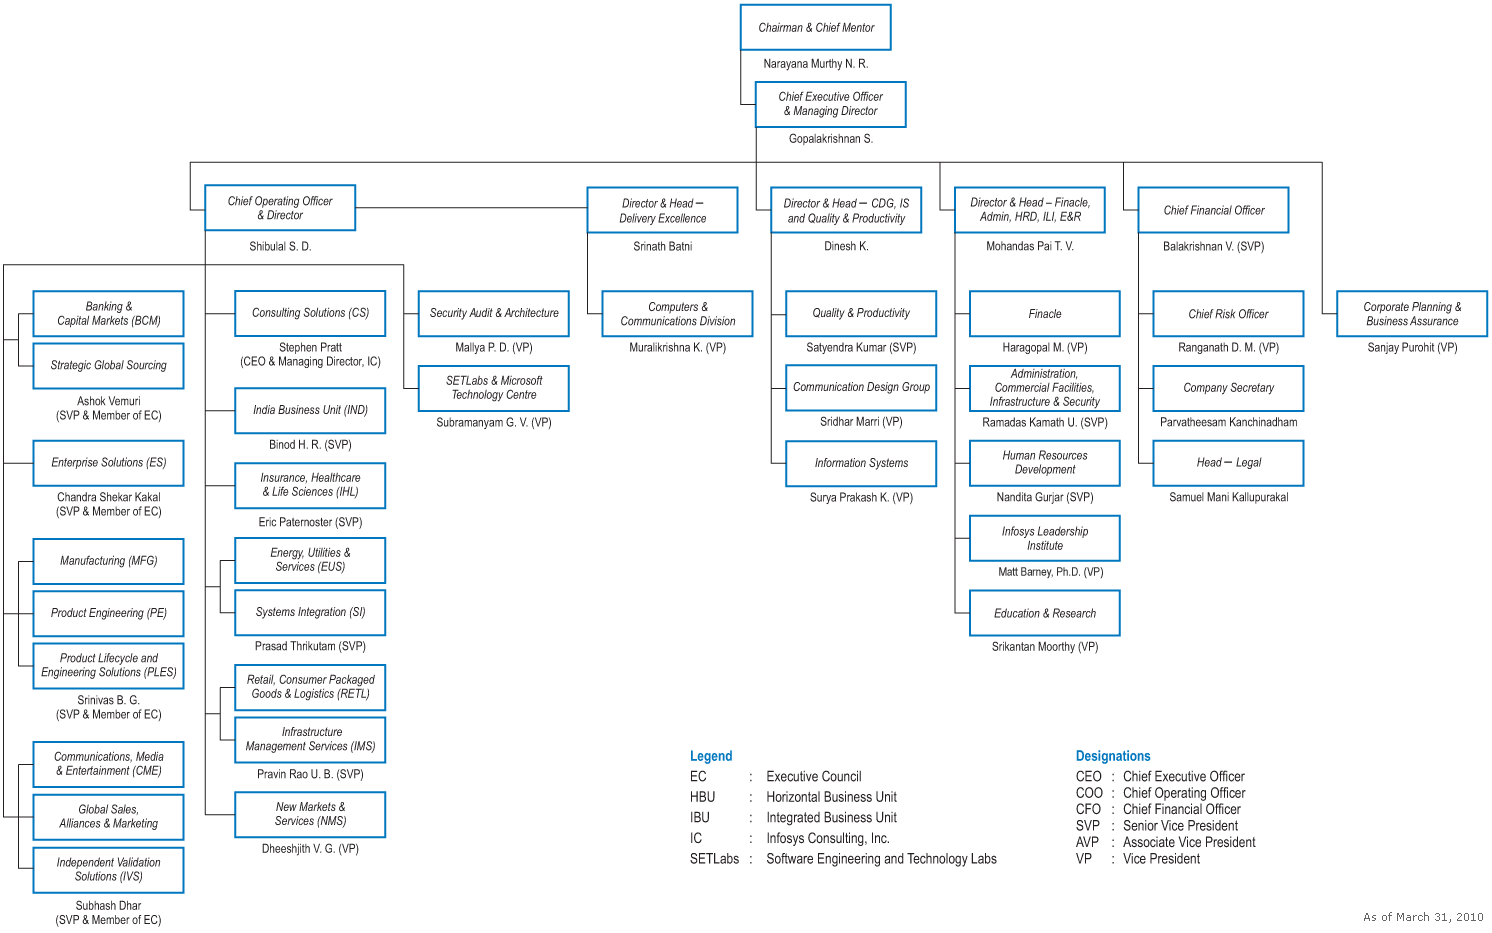 Infosys Org Chart